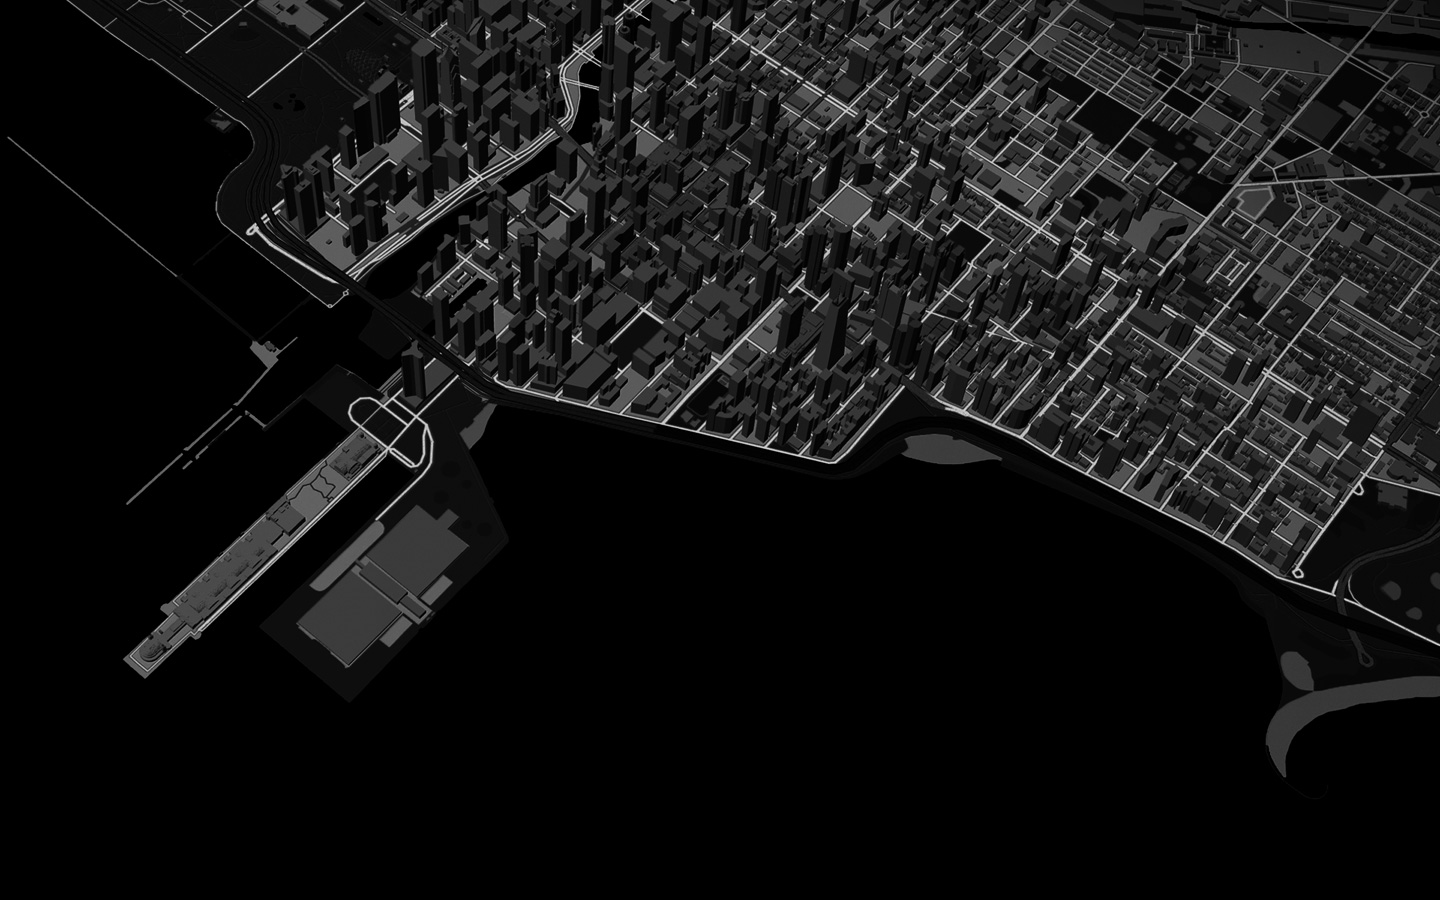 動畫展示城市景觀的 3D 地圖上一條由跑者跑出的路線圖